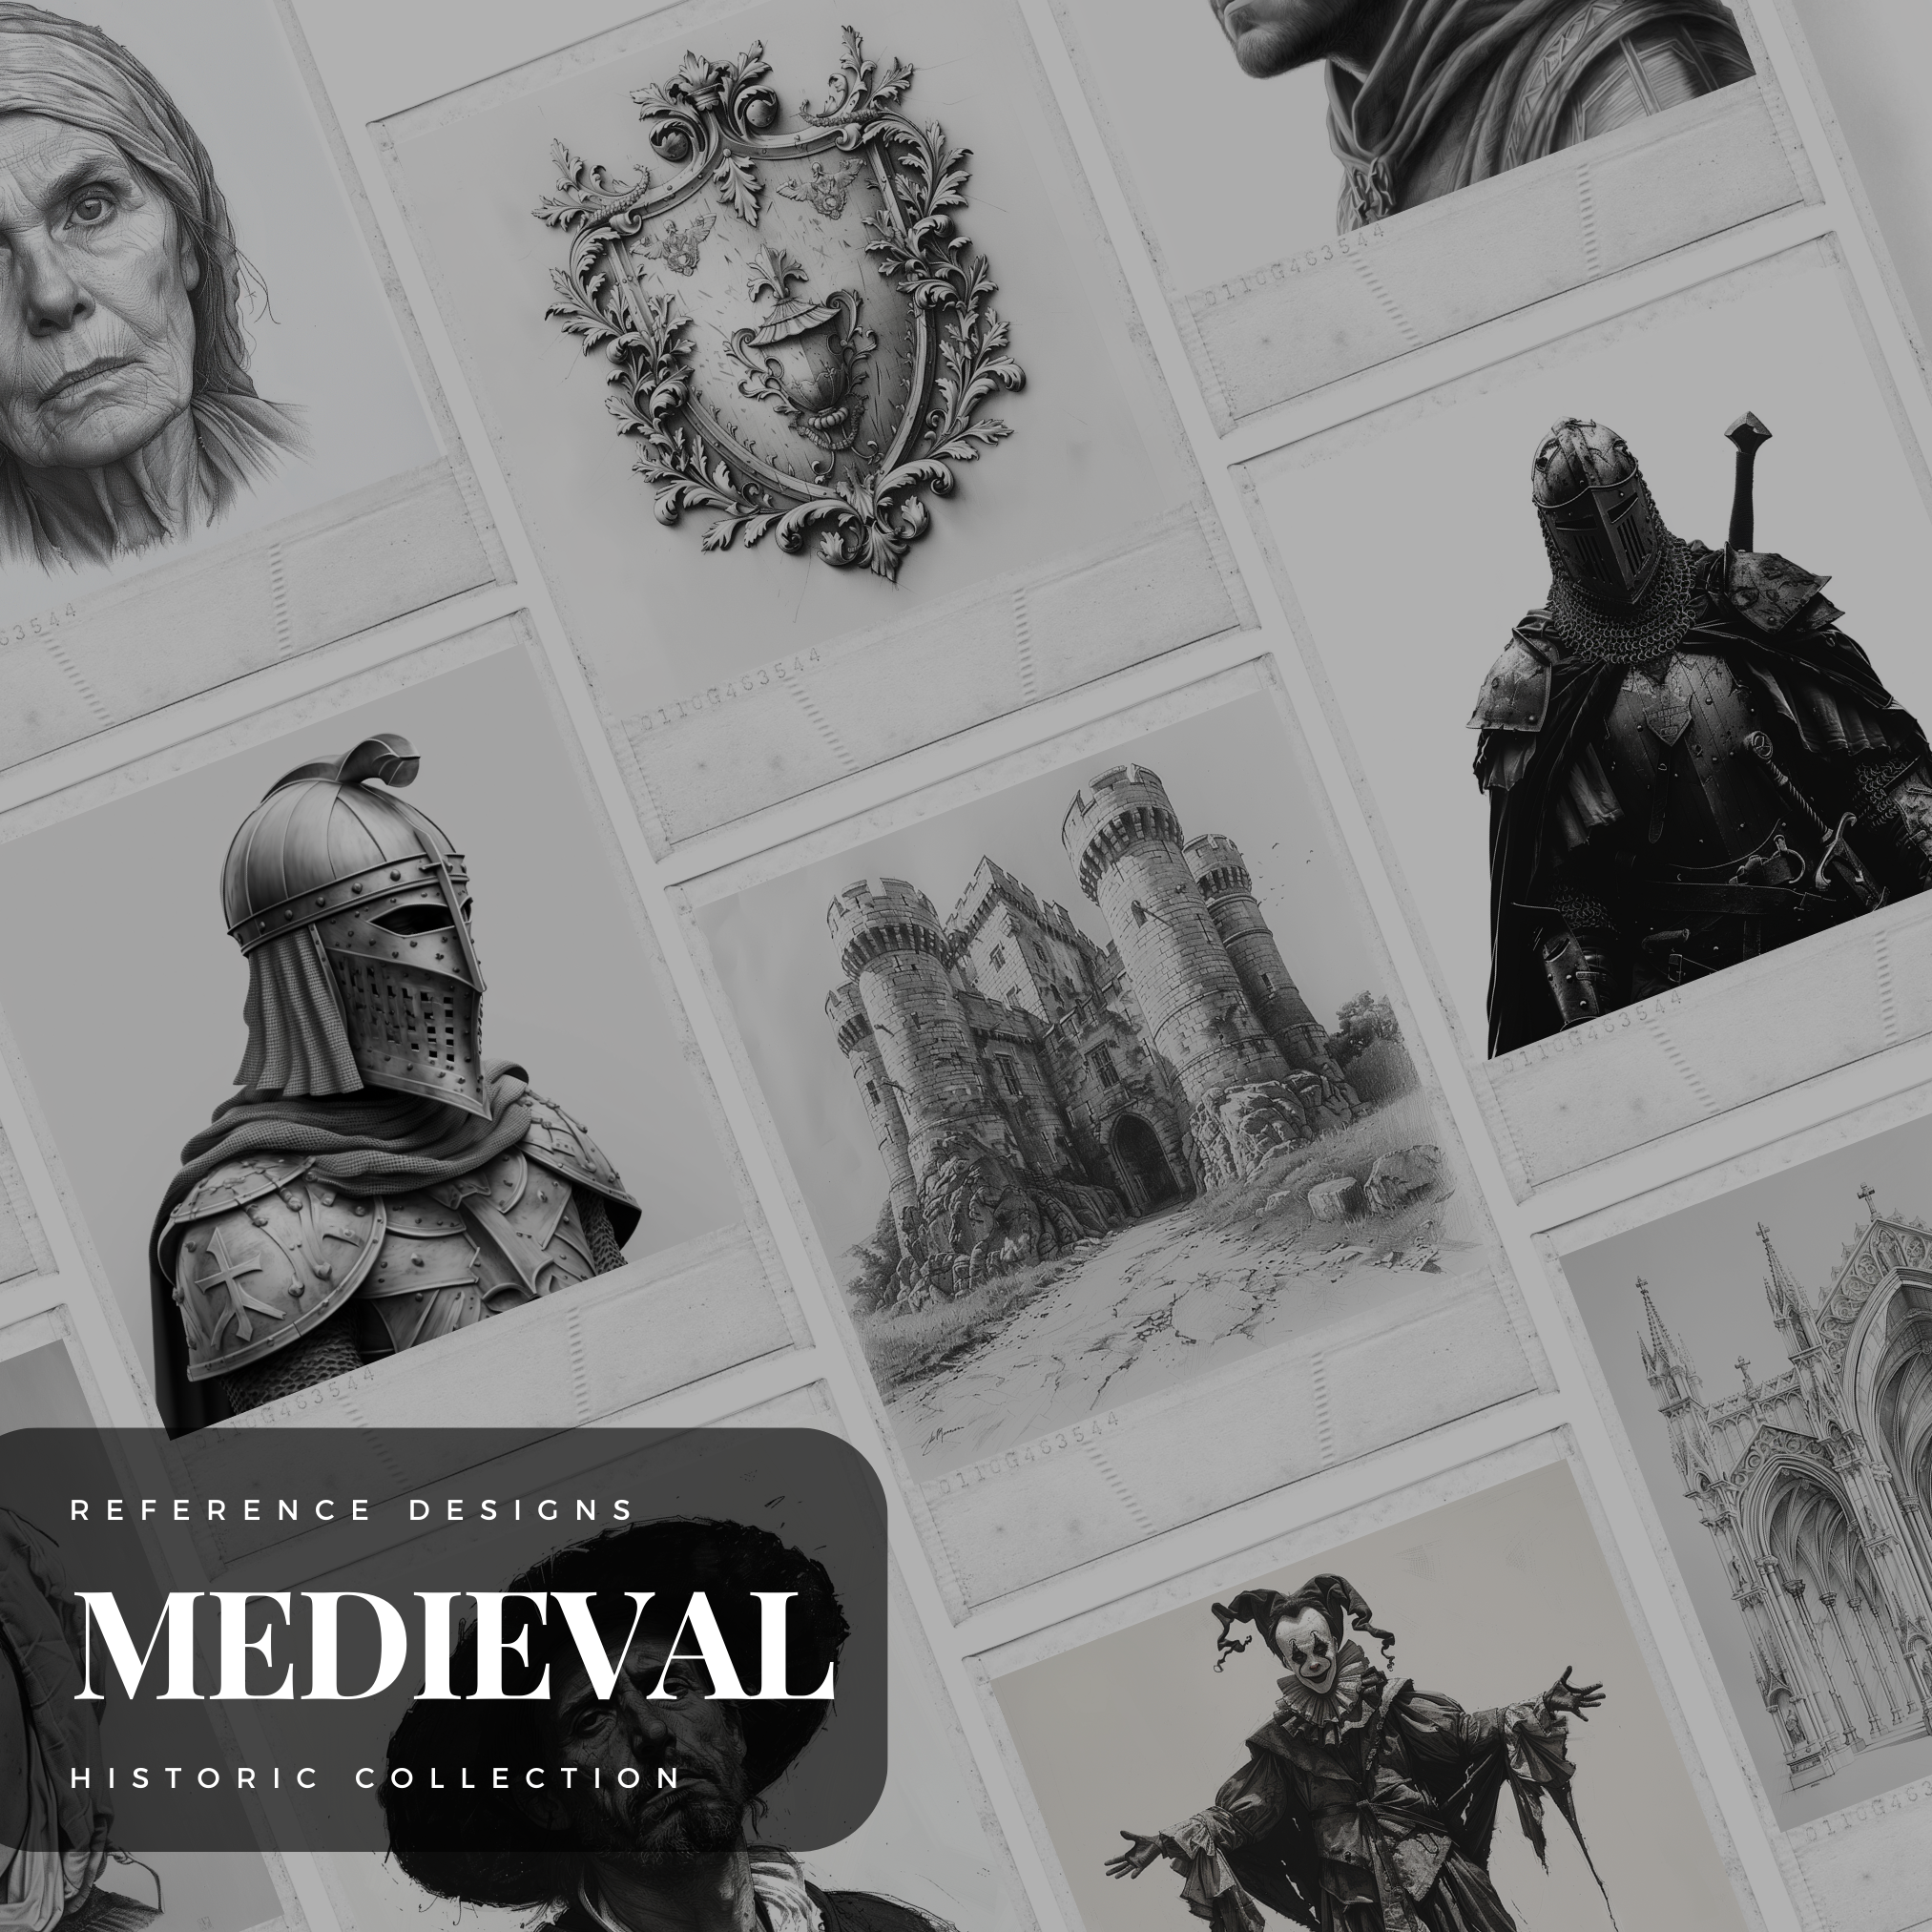 Medieval Europe Digital Design Collection: 100 Procreate & Sketchbook Images